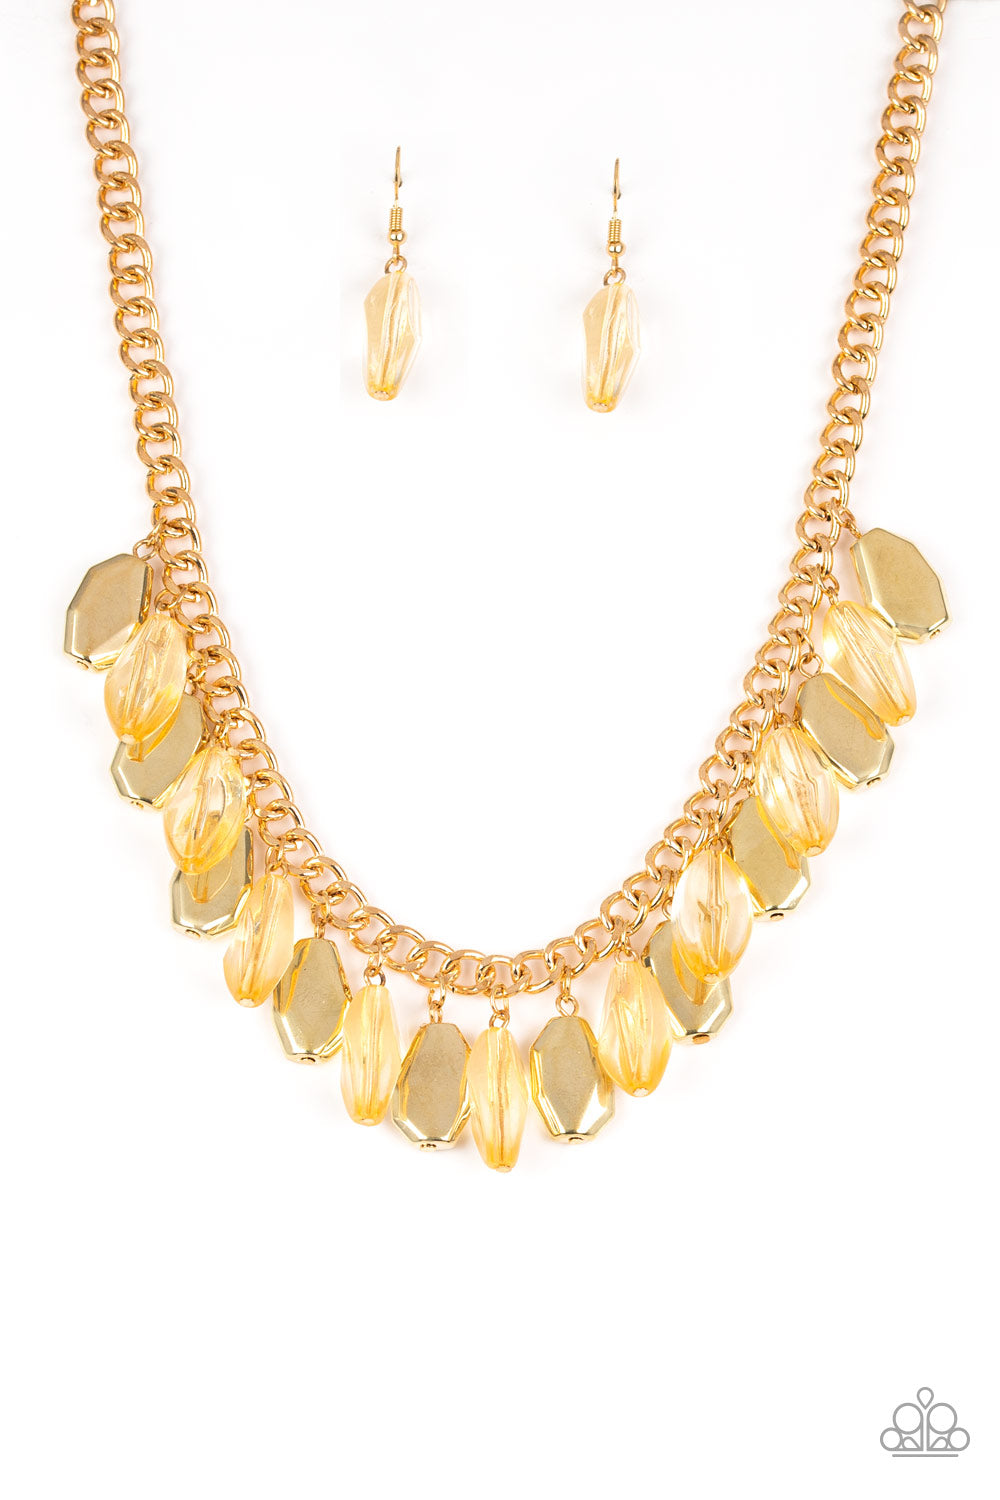 Fringe Fabulous Gold Necklace - Paparazzi